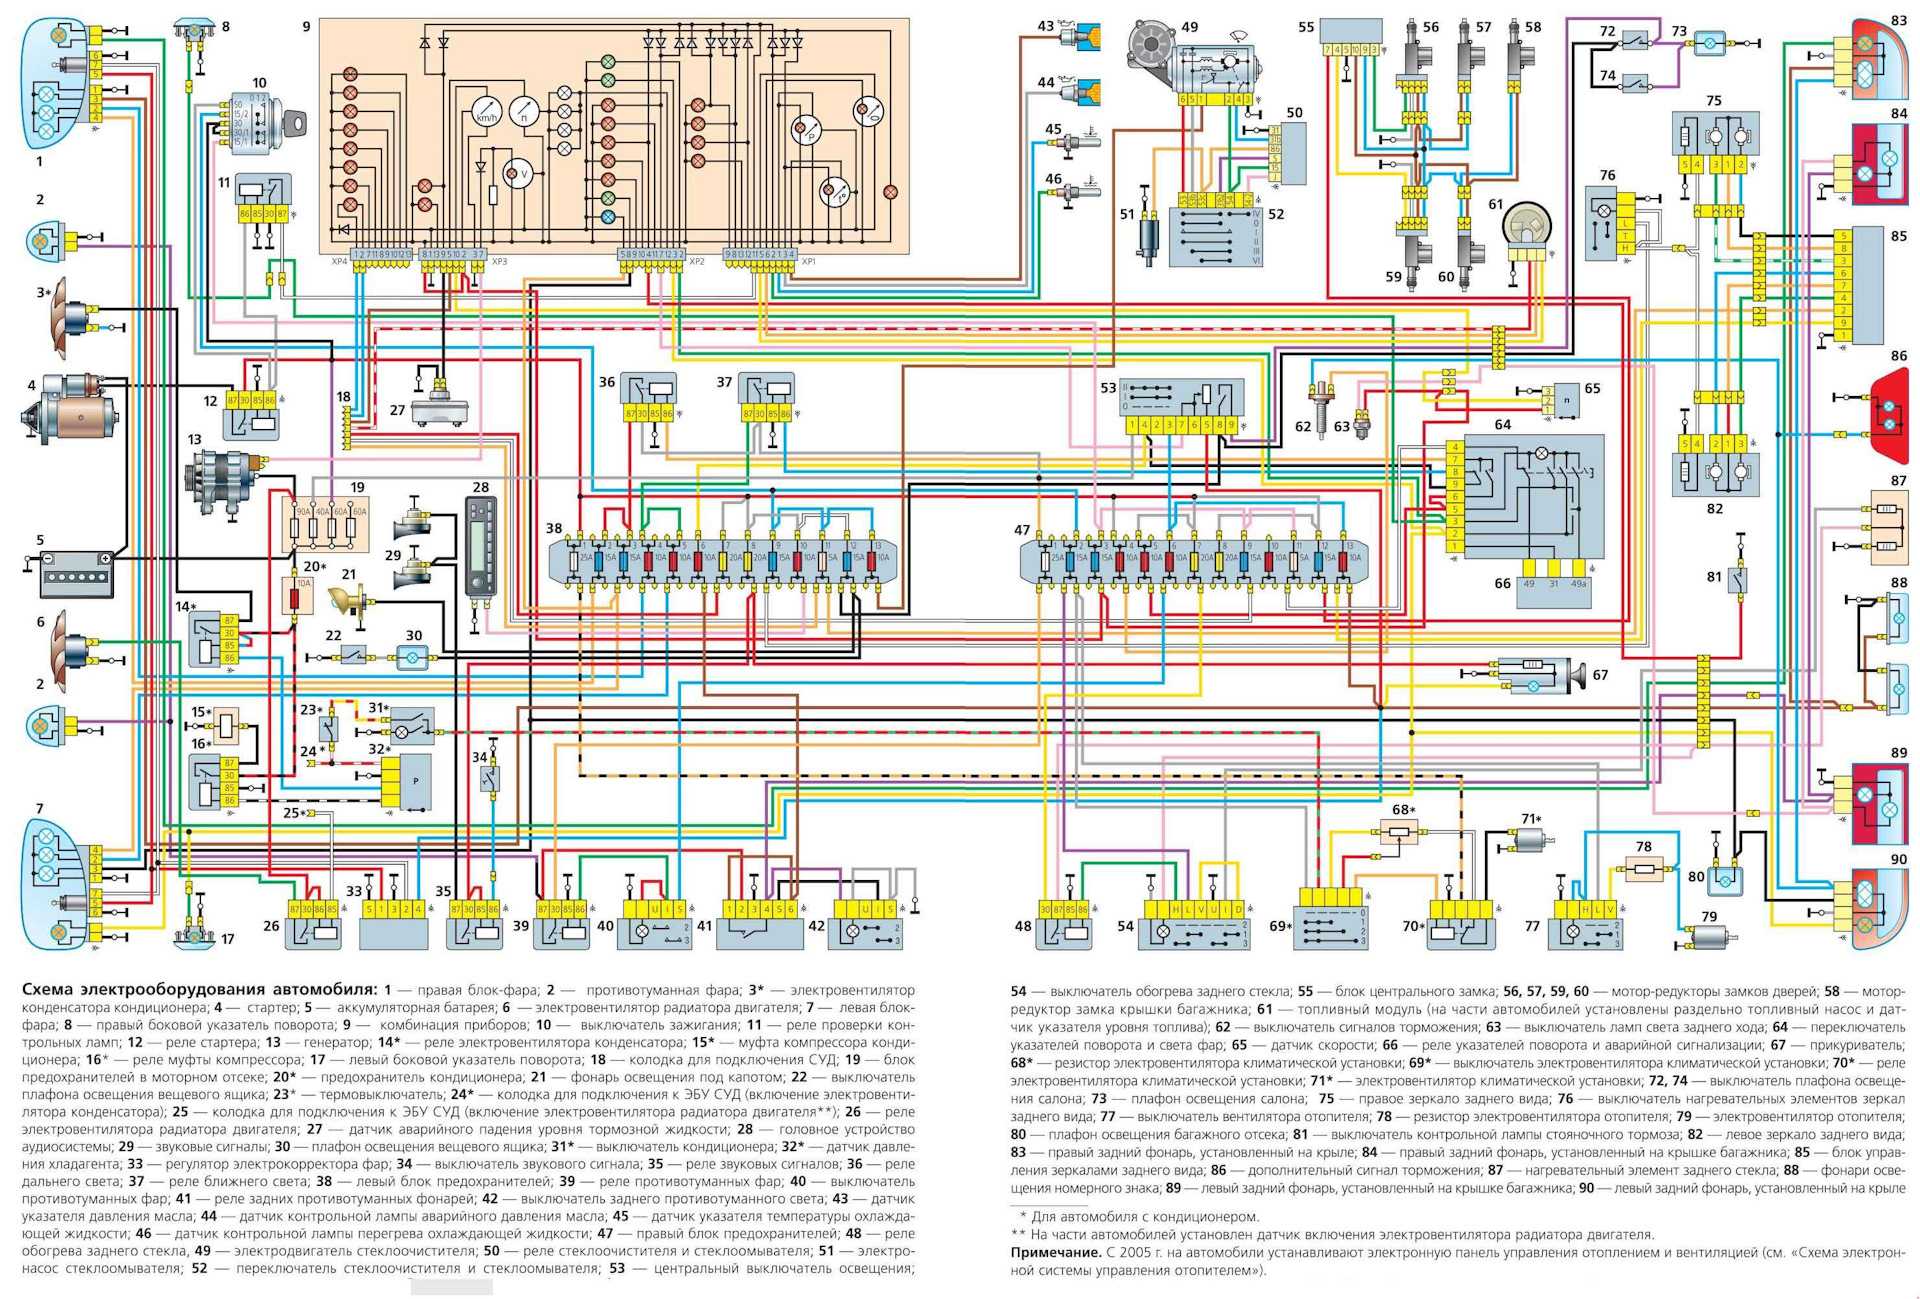 Цветная электросхема газ-3110 (31029, 31105, 3102) с описанием электрооборудования